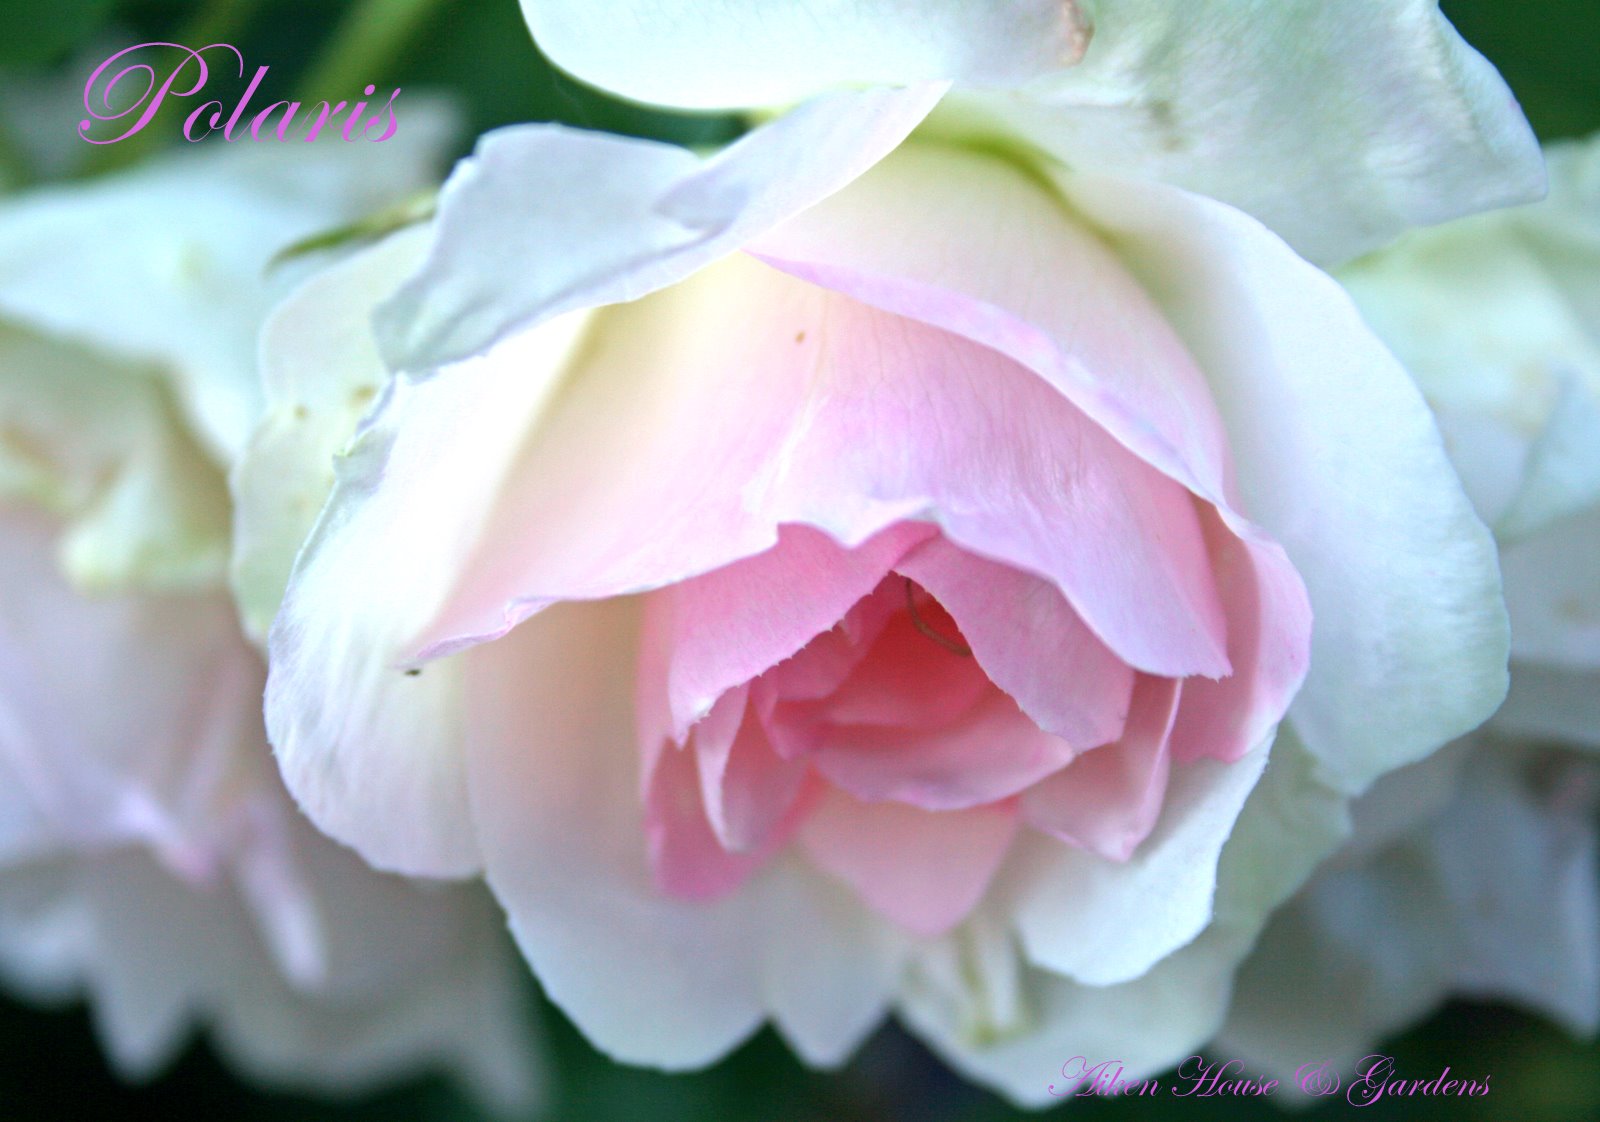 Aiken House & Gardens: Romantic Roses